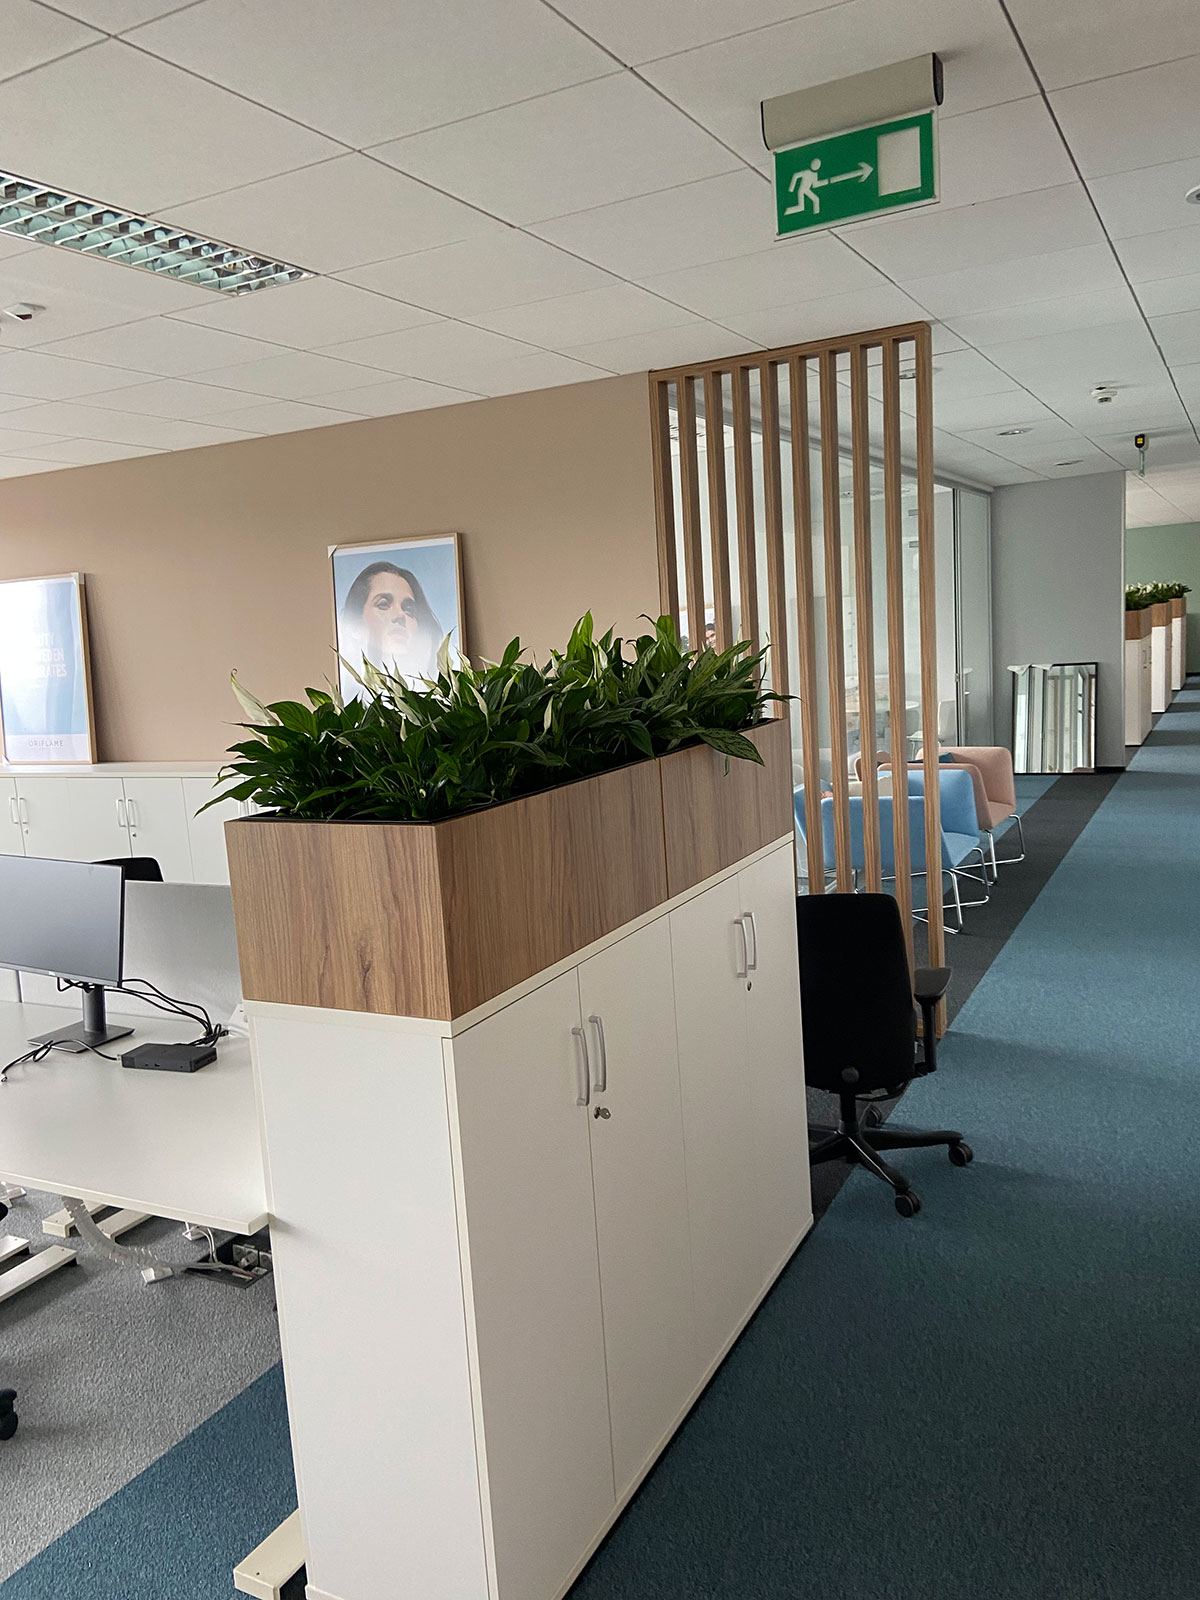 Biuro z biurkami, krzesłami i roślinami.